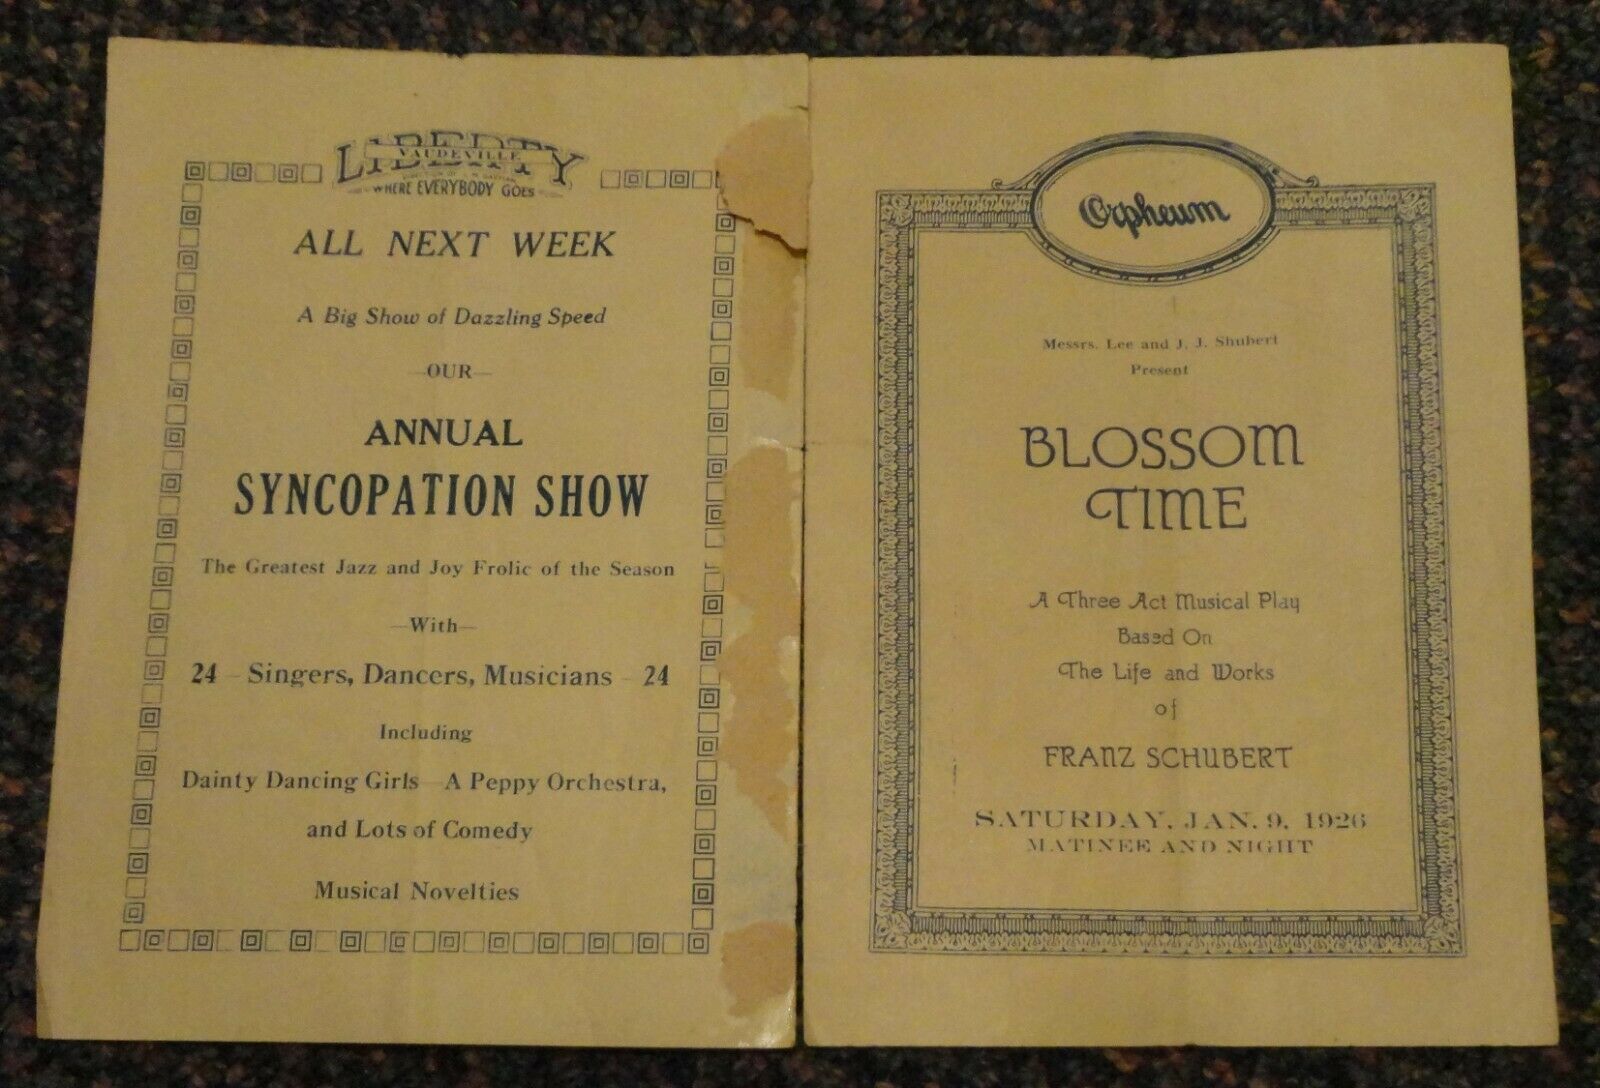 Jan 9 1926 Lincoln Nebraska Orpheum Theatre Program - Blossom Time